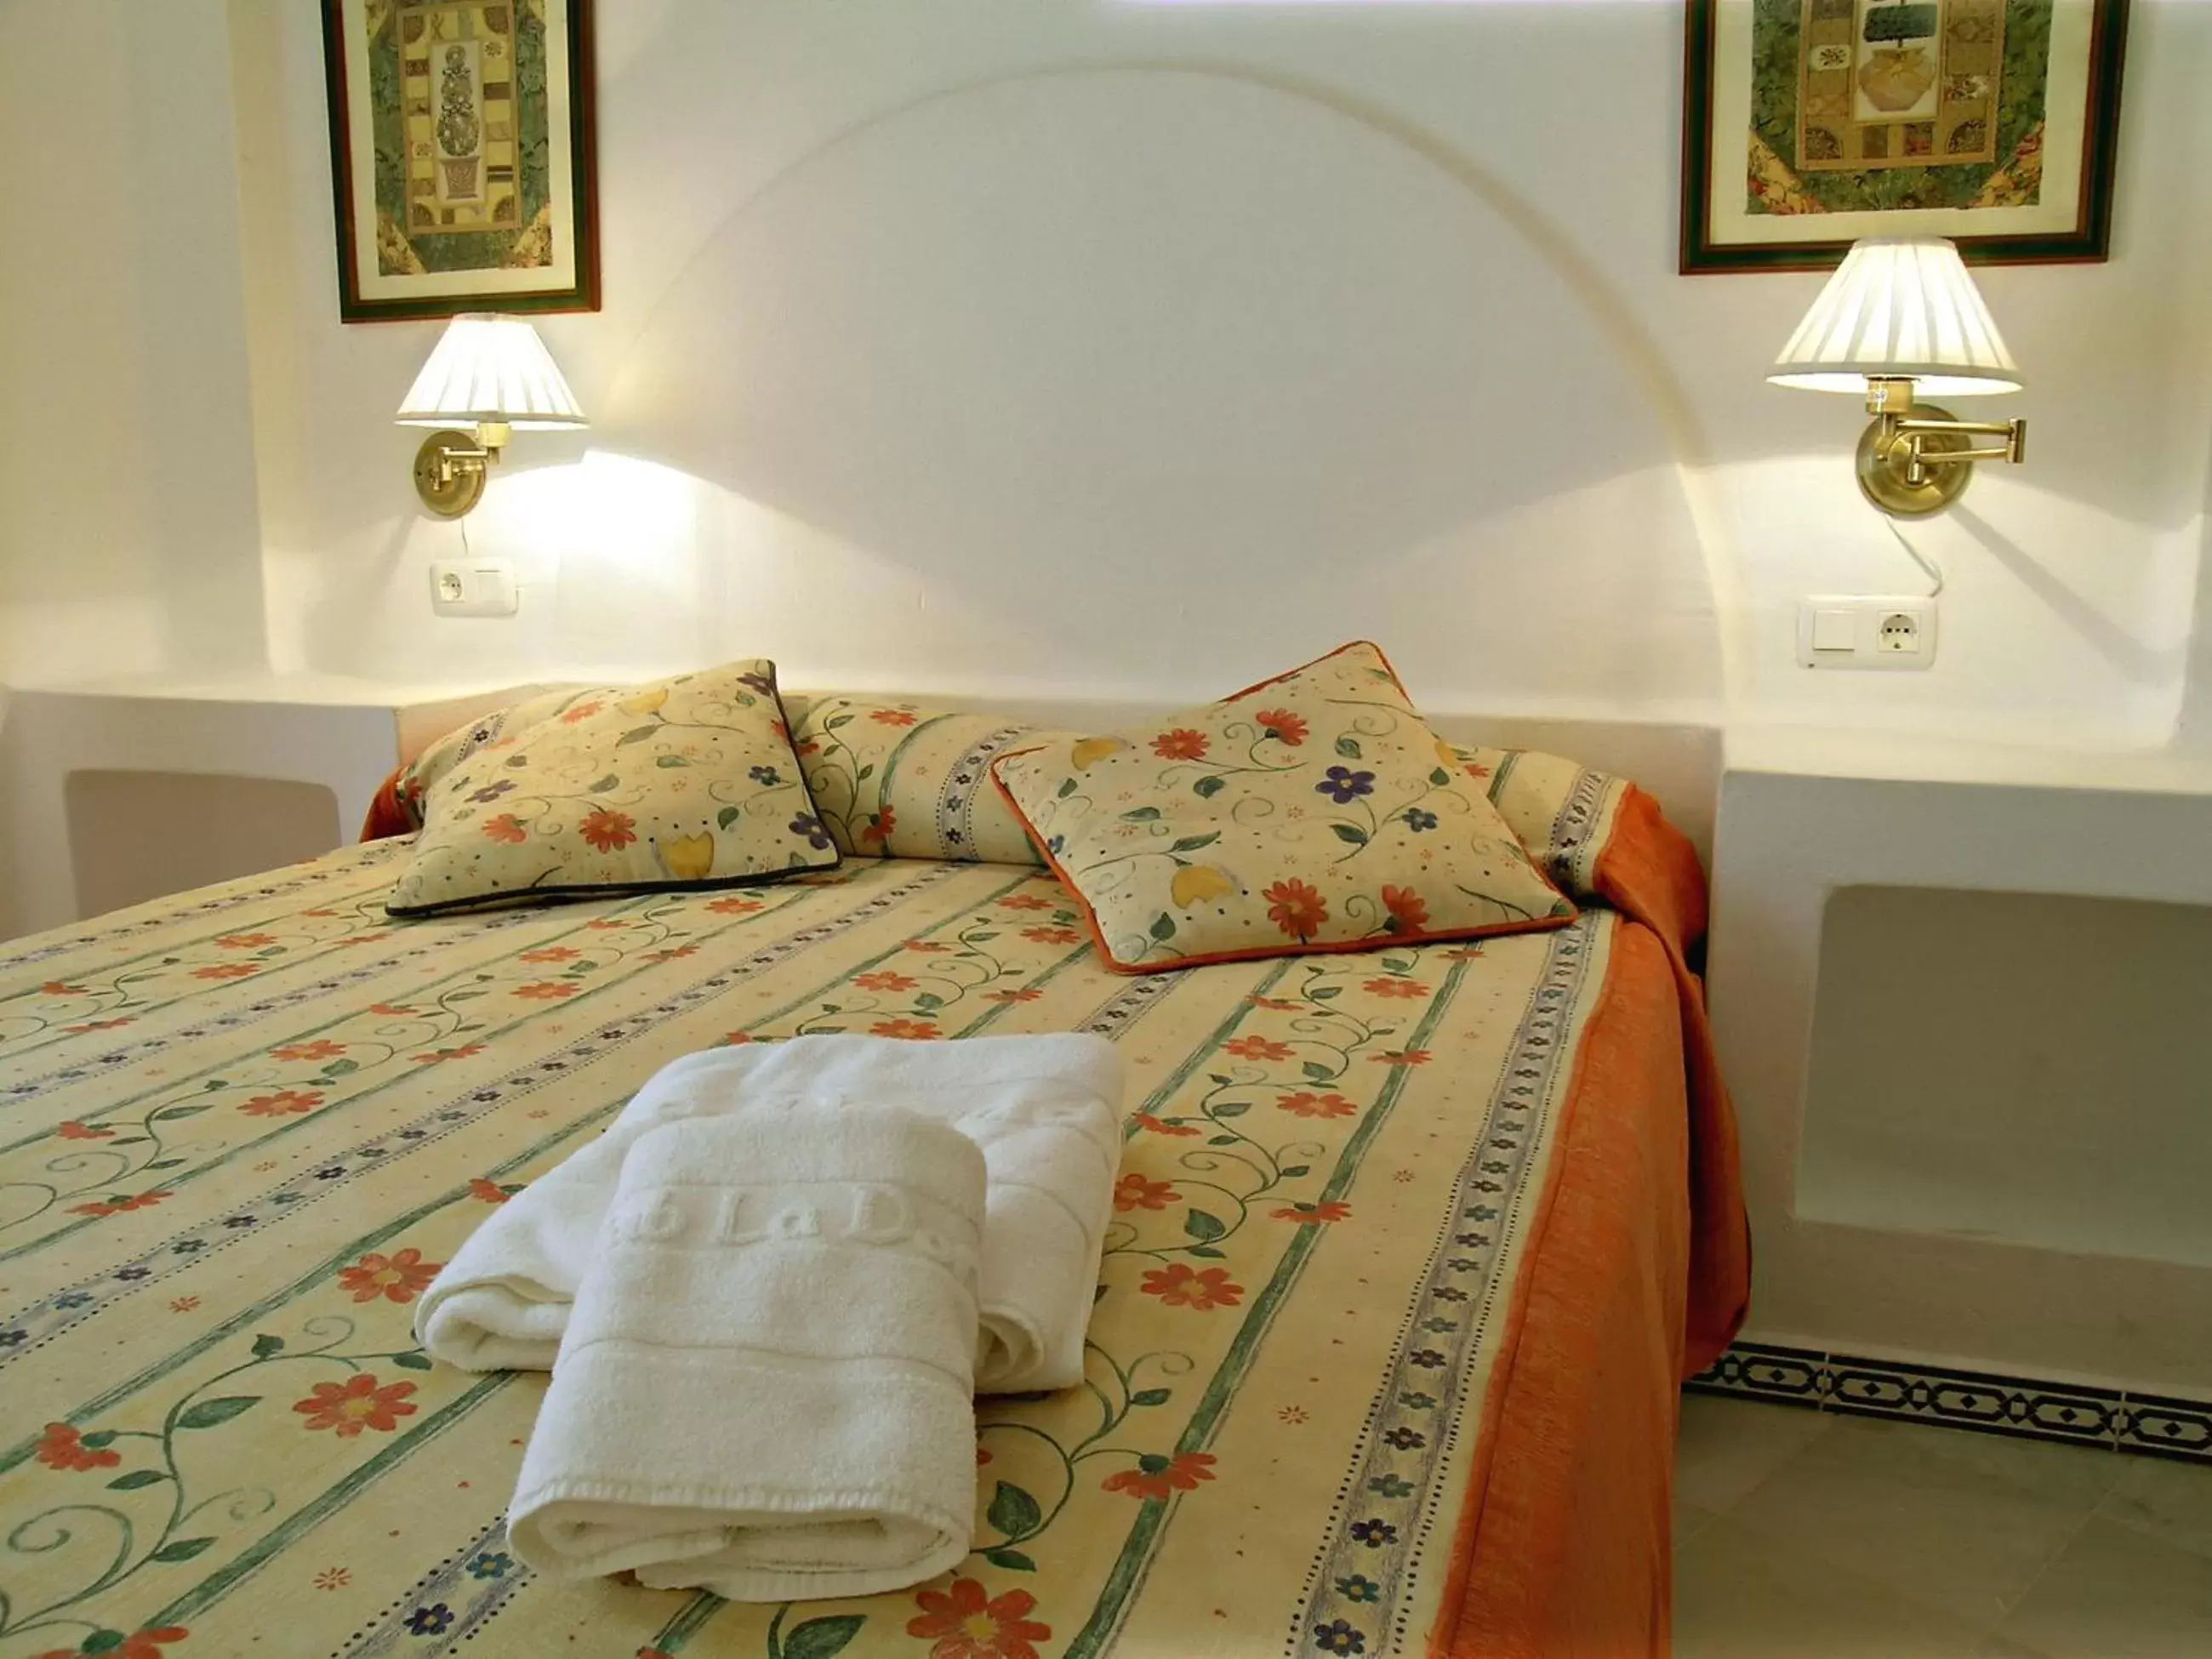 Bedroom, Room Photo in Ona Aldea del Mar